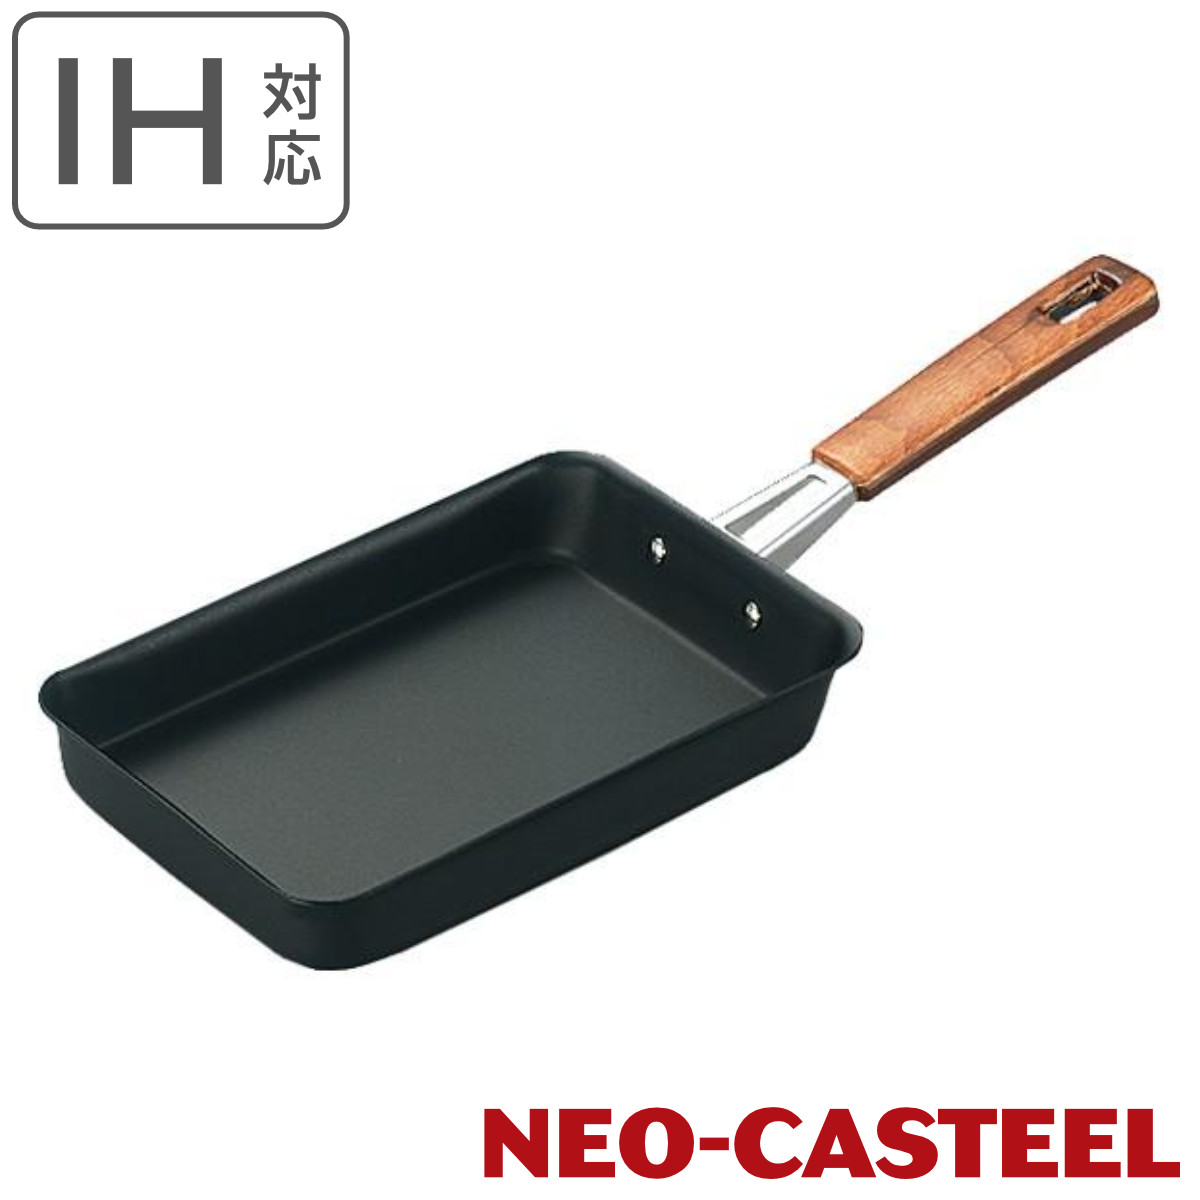 玉子焼き器 約12×13cm IH対応 鉄製 ネオキャスチール 日本製